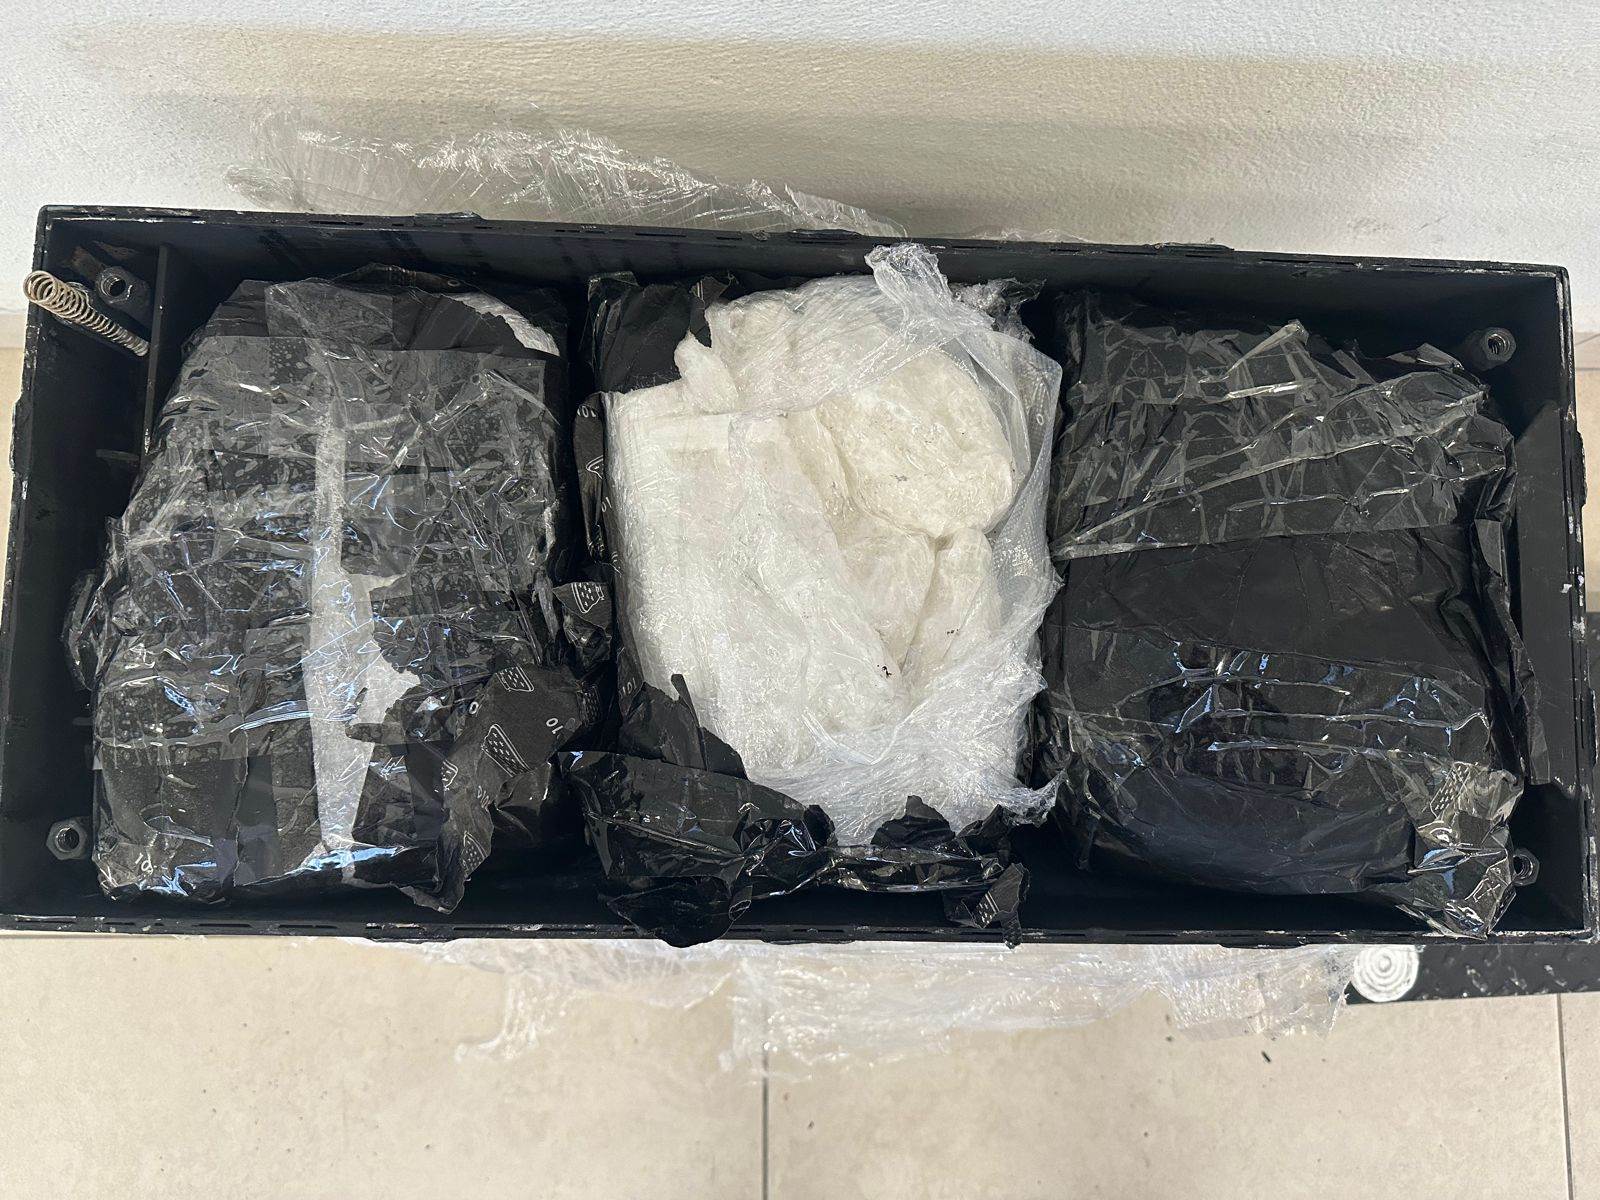 Integrantes de la Guardia Nacional, aseguraron varios paquetes de aparente droga sintética cristal, ocultos en una caja de metal con doble fondo, los cuales pretendían ser enviados por paquetería en una central camionera.